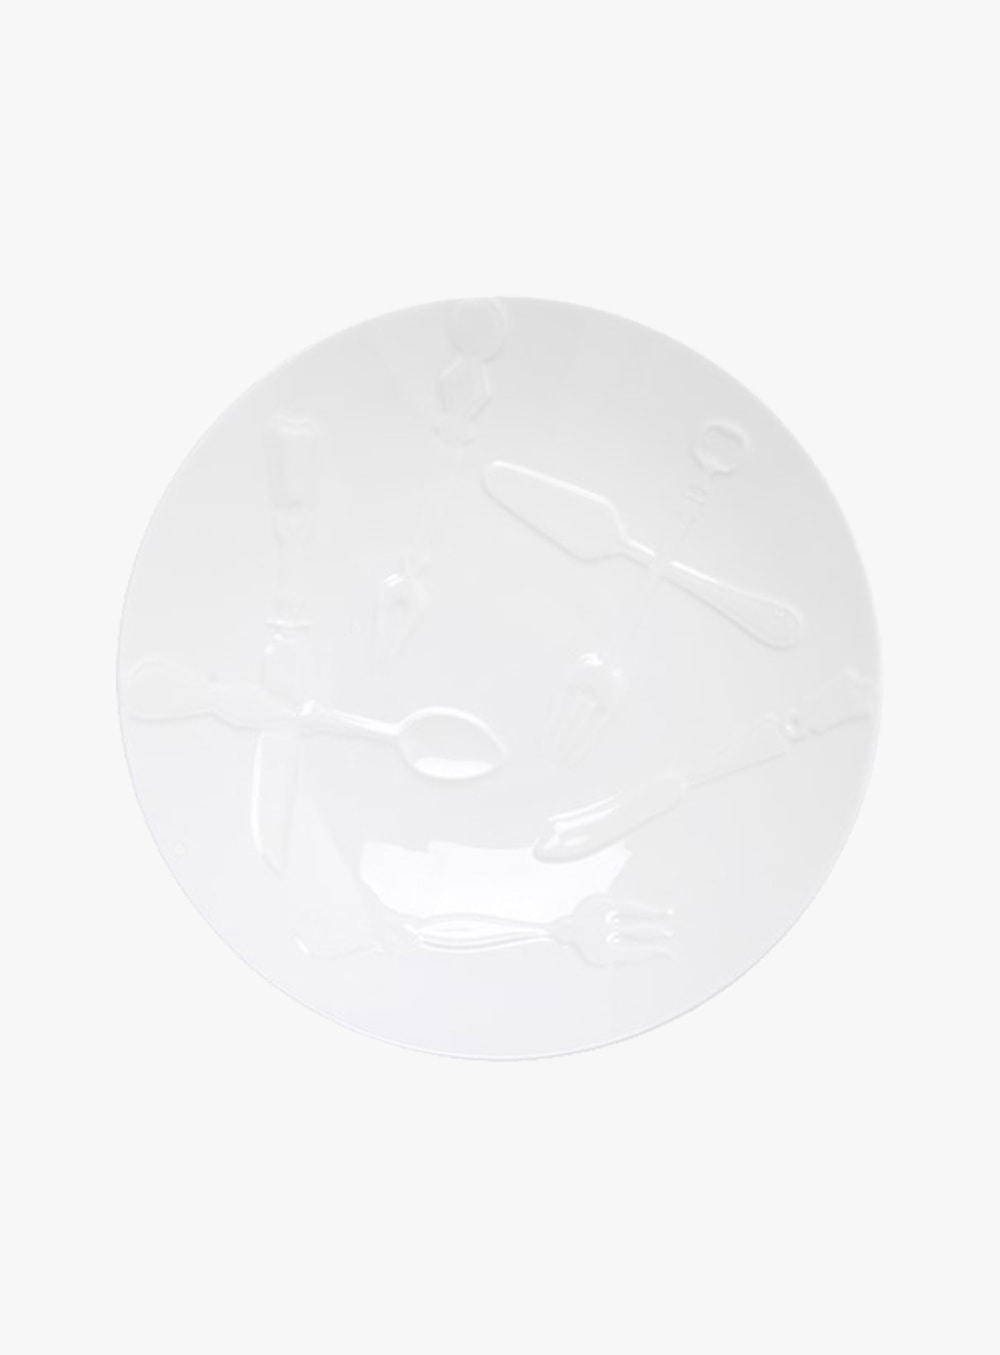 트위그뉴욕 - [위클리 클럽 오더]김하윤 커트러리 샐러드&amp;파스타 볼